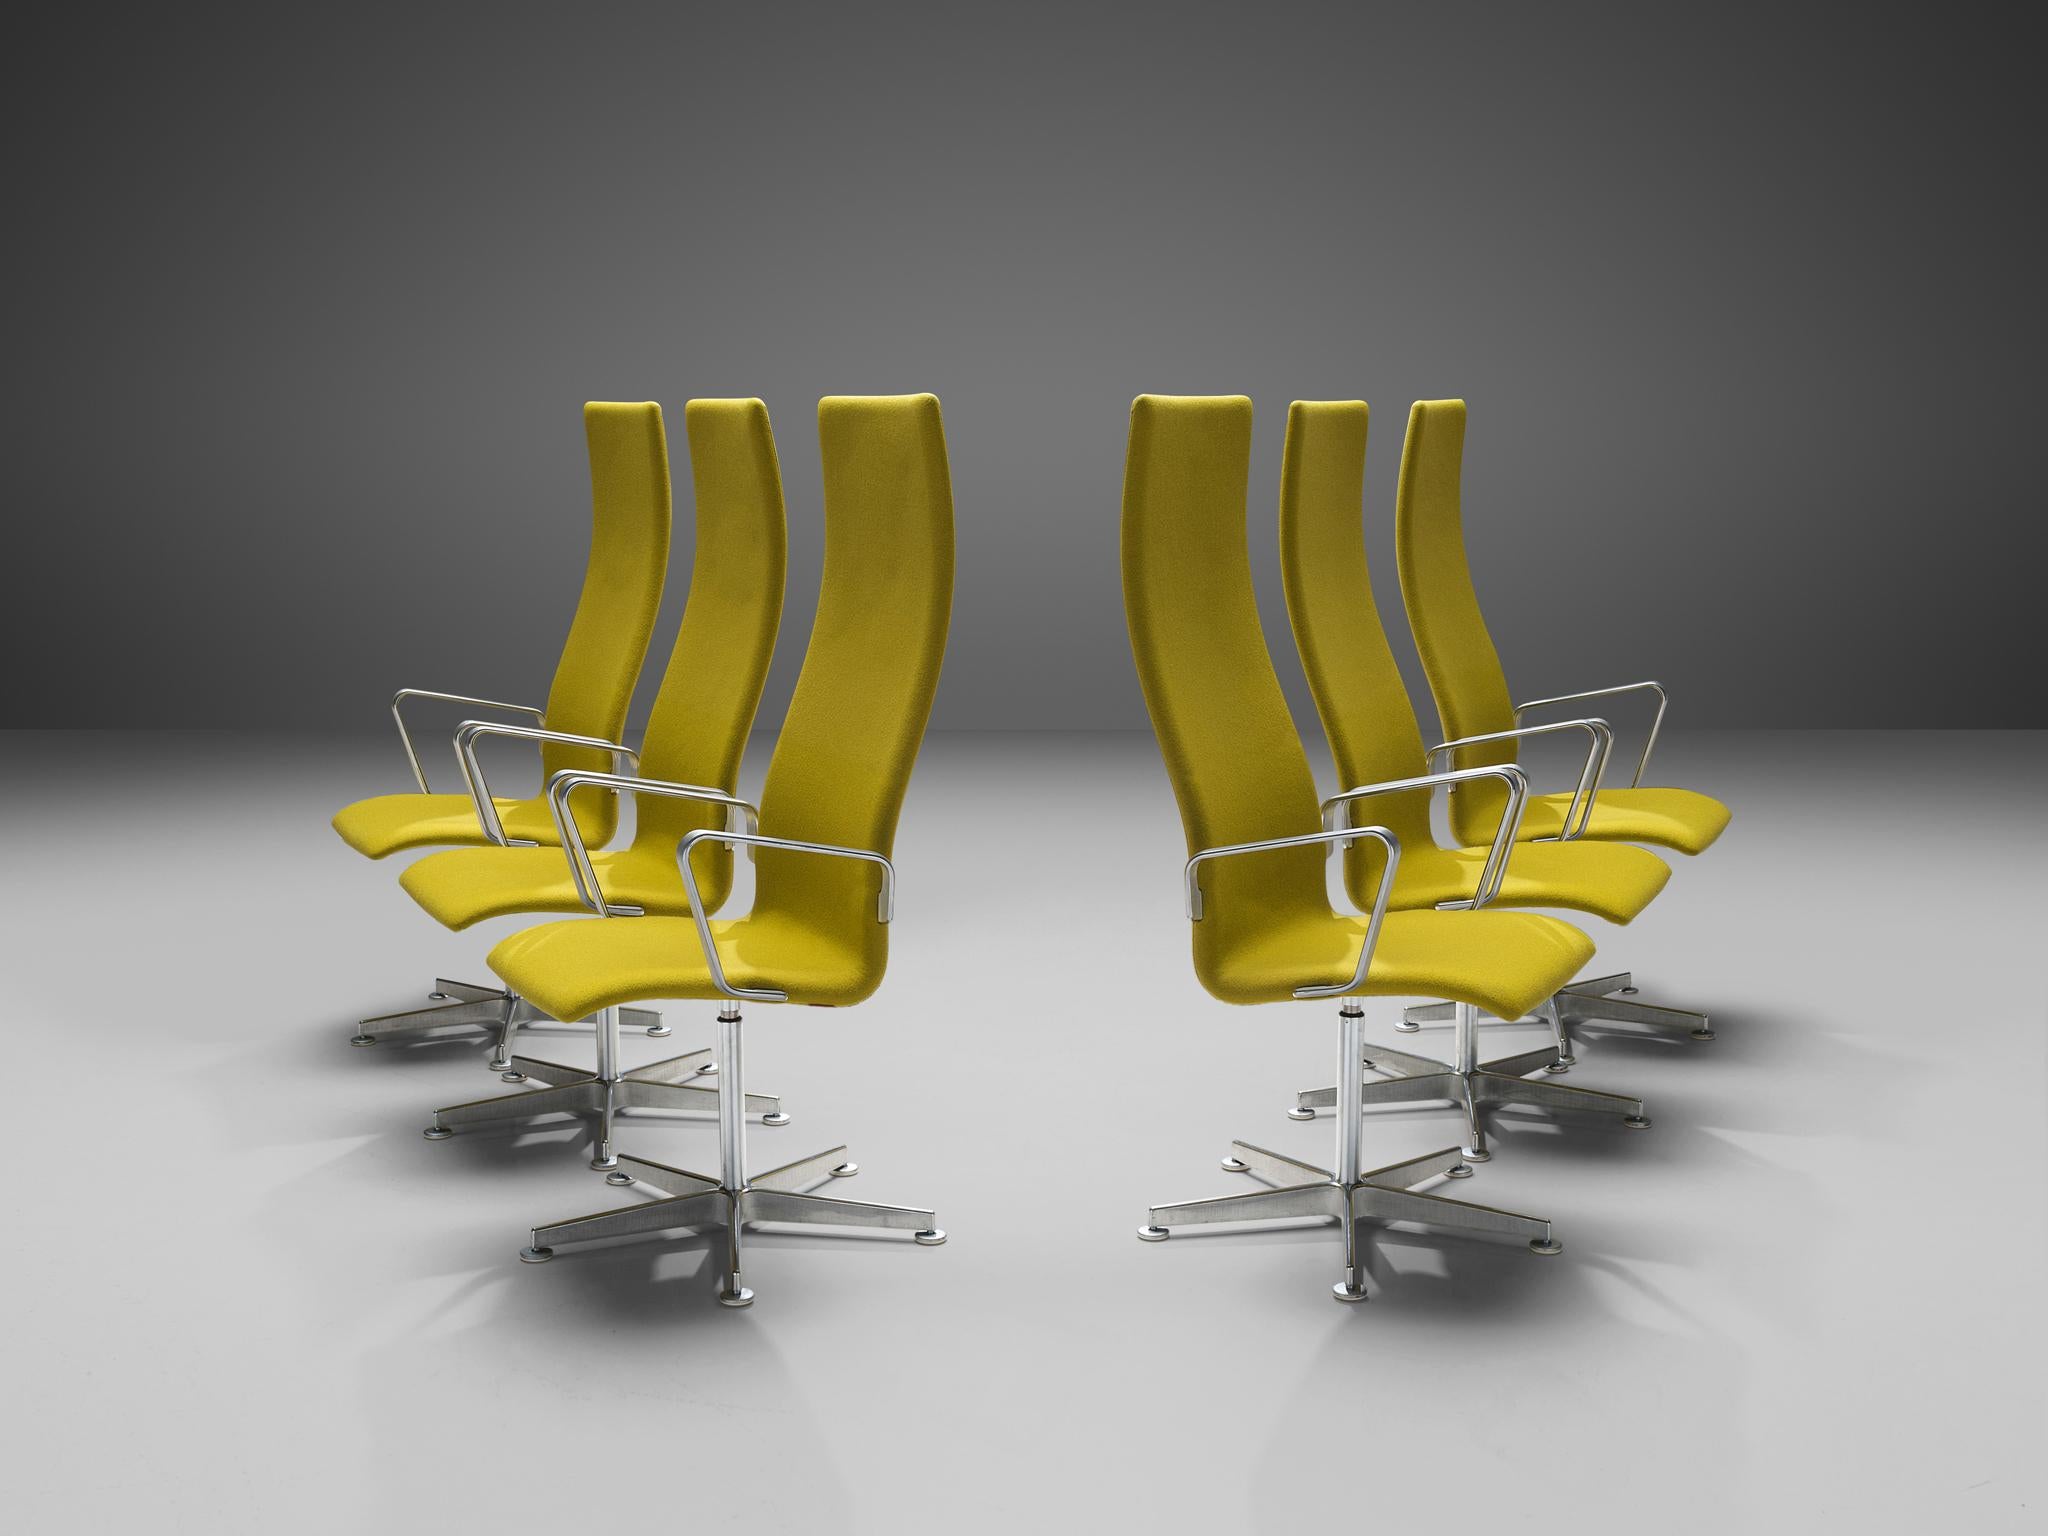 Arne Jacobsen pour Fritz Hansen, ensemble de six chaises de bureau 'Oxford' modèle 3272, aluminium, bois, tissu d'ameublement, Royaume-Uni, design 1965, production ultérieure.

La version originale de la chaise 